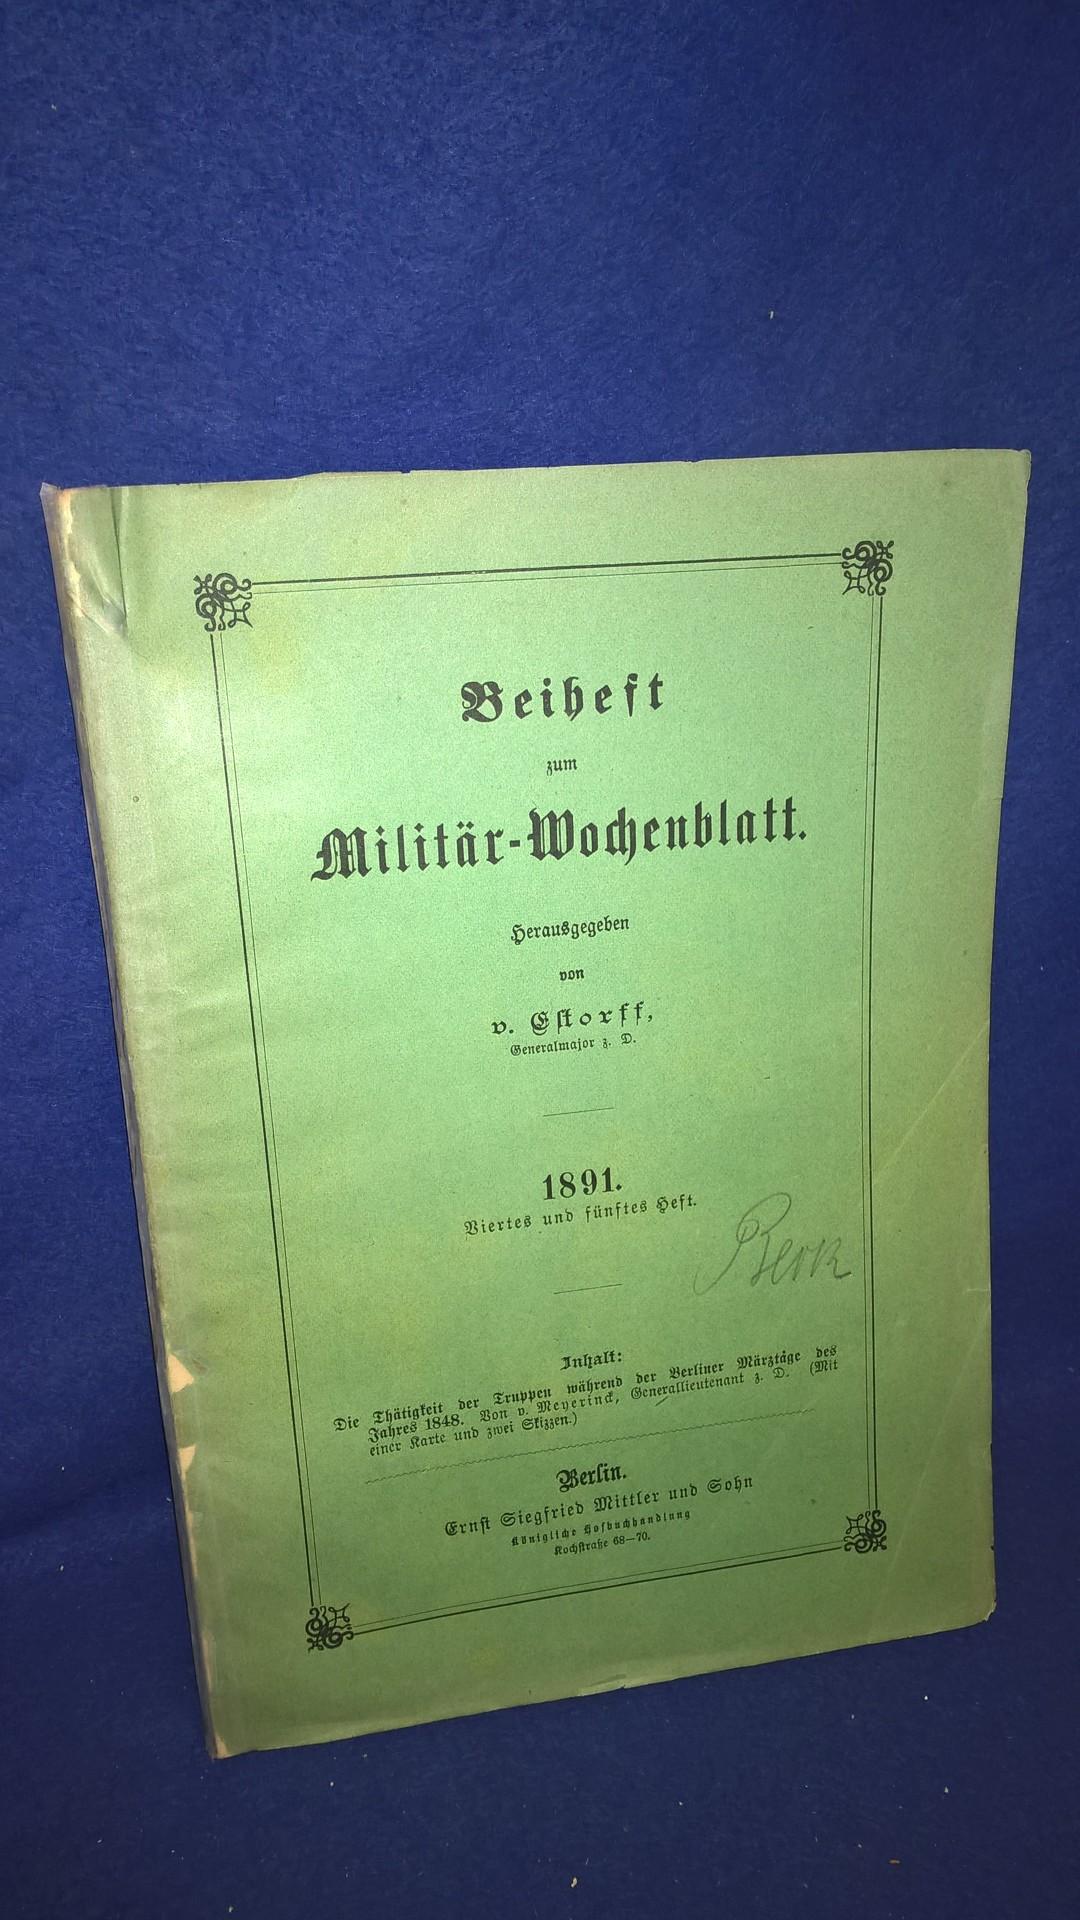 Beiheft zum Militärwochenblatt, 4./5. Heft,1891. Aus dem Inhalt: Thätigkeit der Truppen während der Berliner Märztage des Jahres 1848.